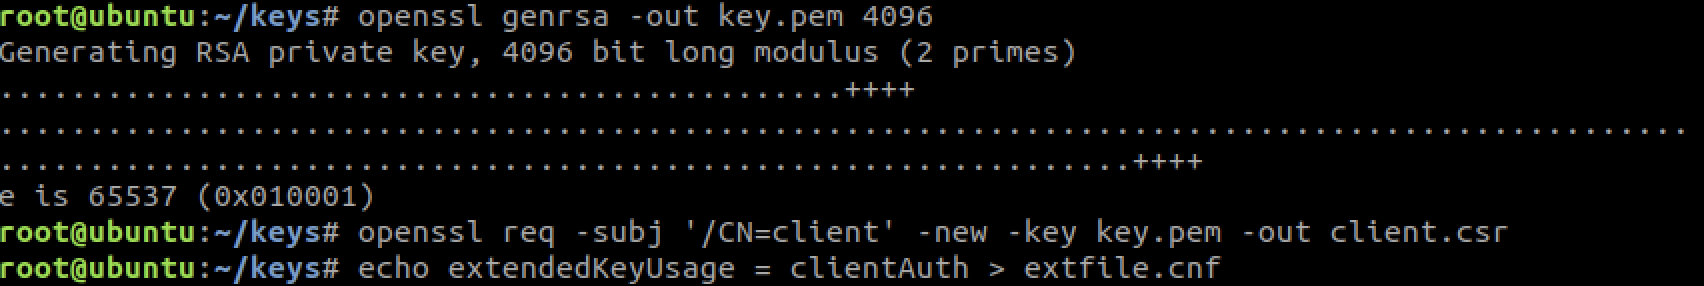 generate key.pem